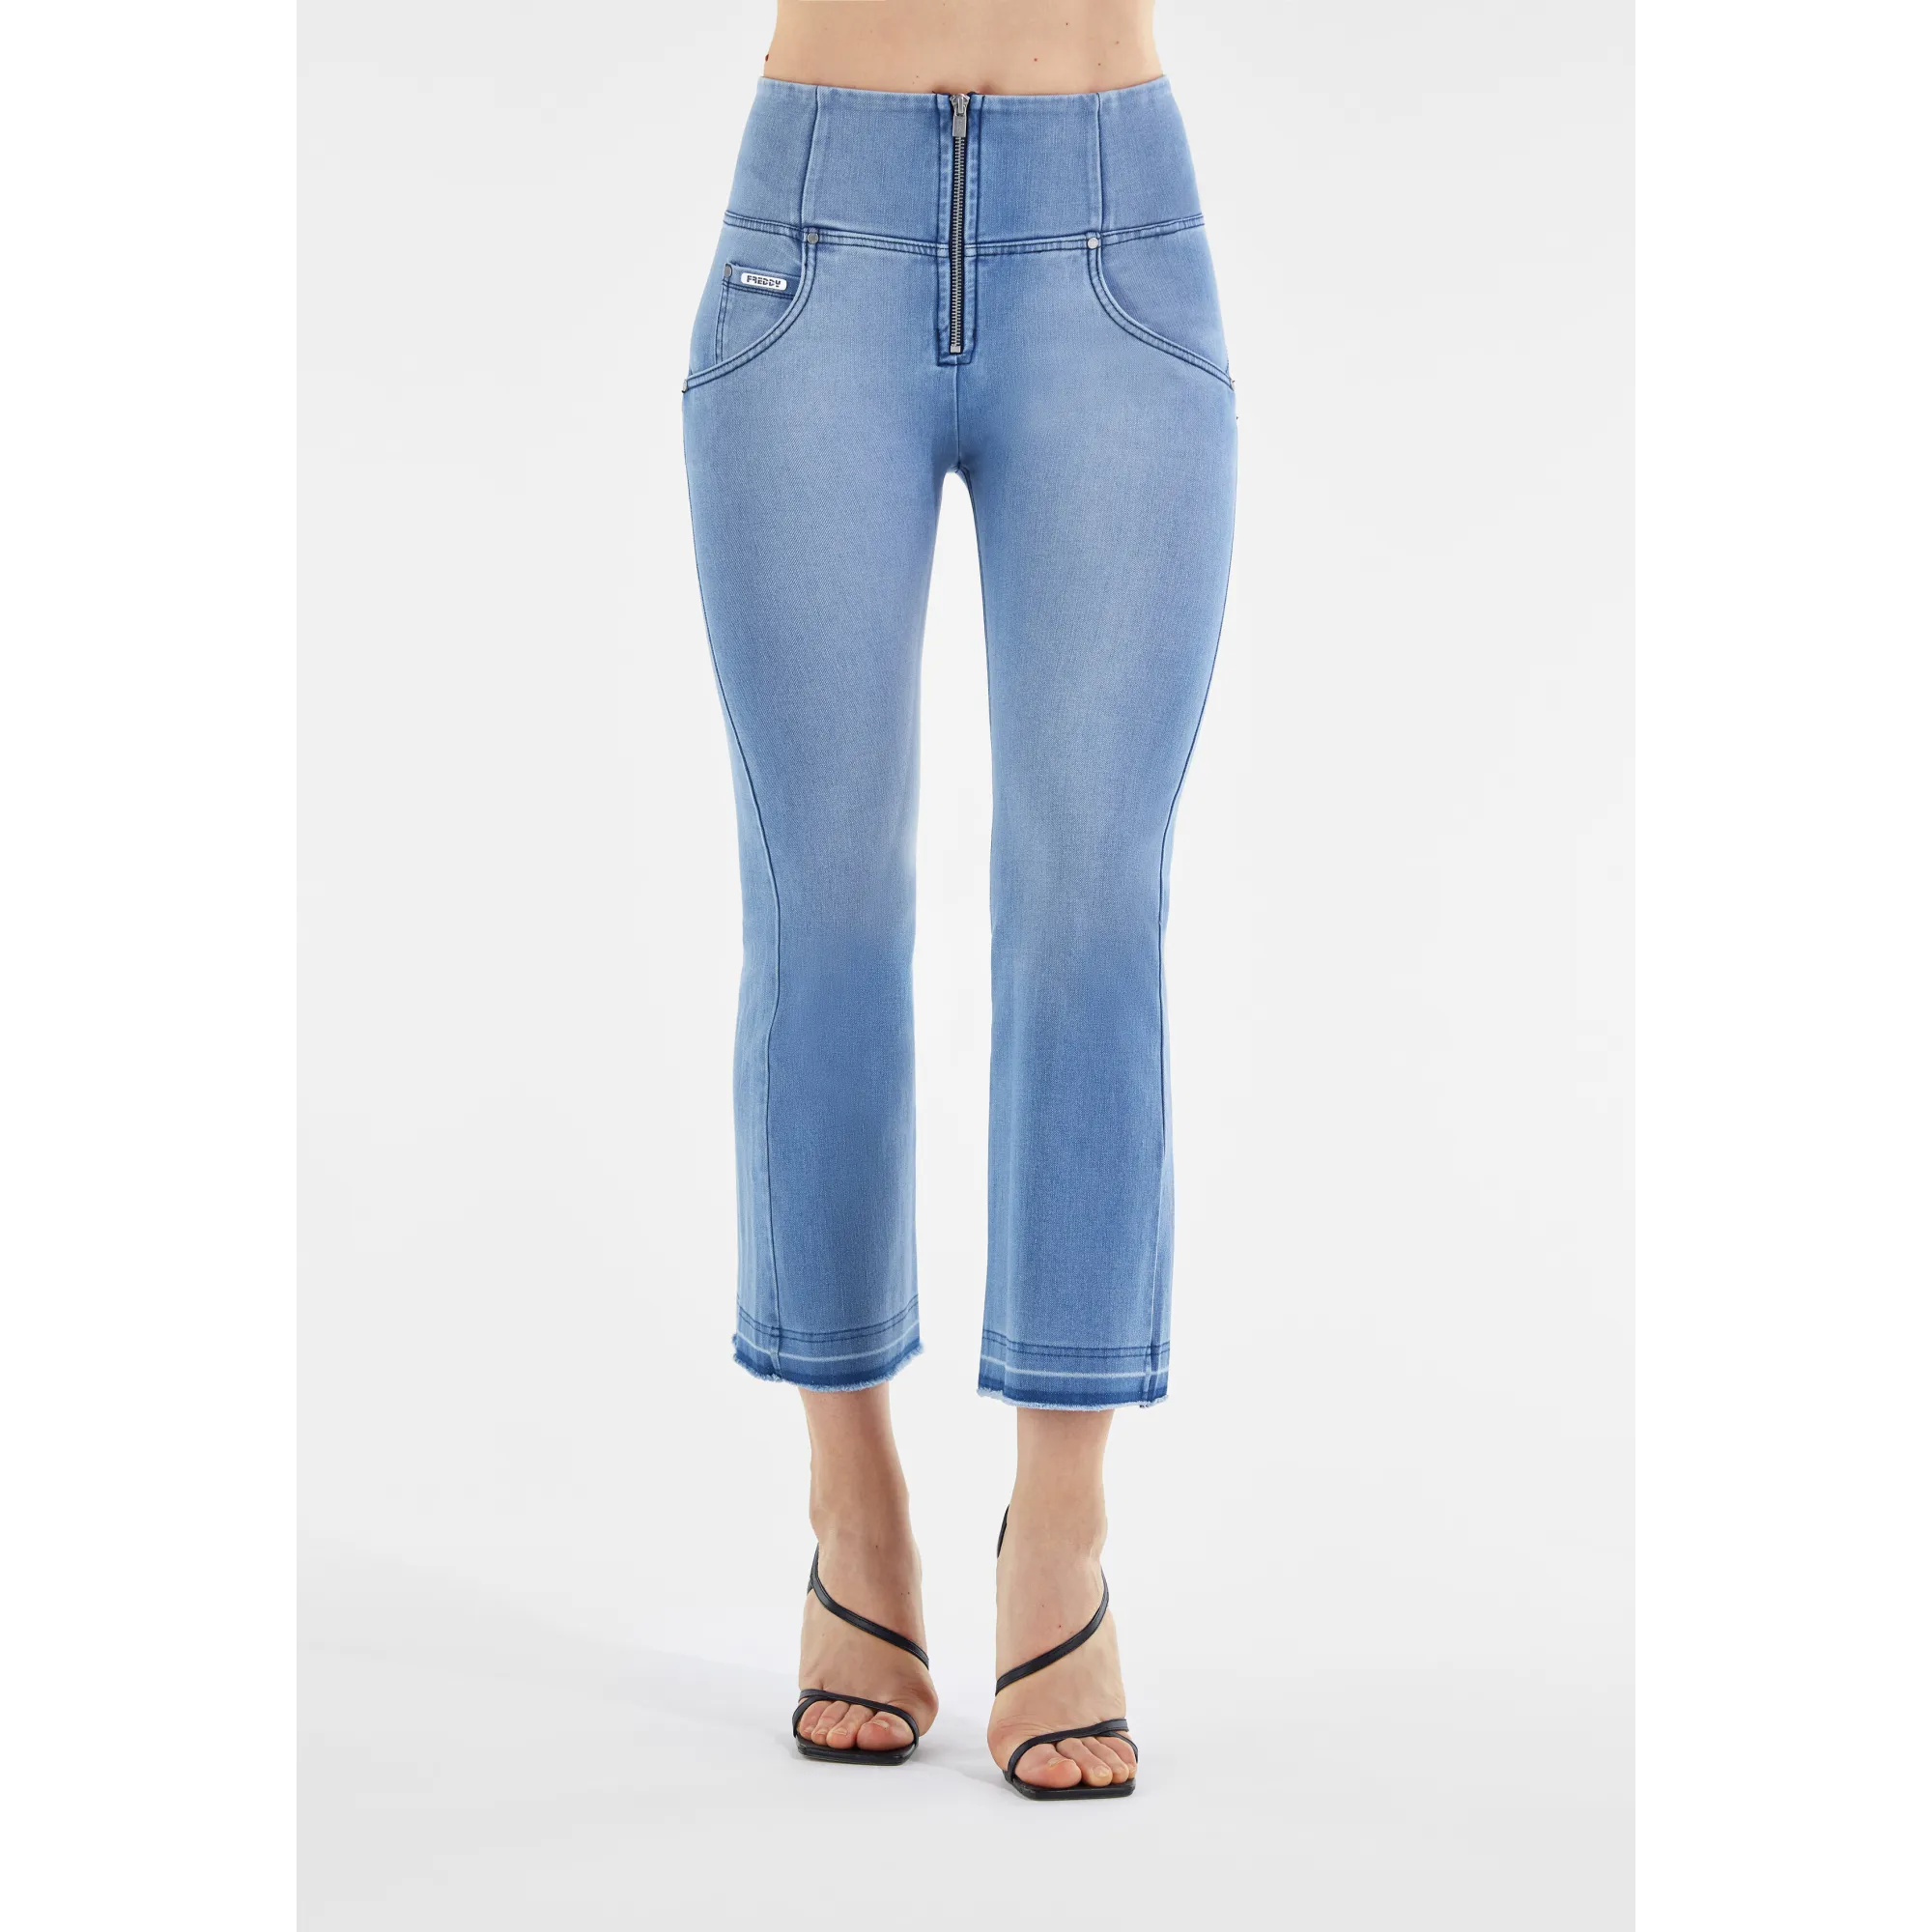 Freddy WR.UP® Snug Damen Push-Up Jeans - 7/8 High Waist Raw-Cut Flare - Used-Effect - Hellblau - Blaue Nähte